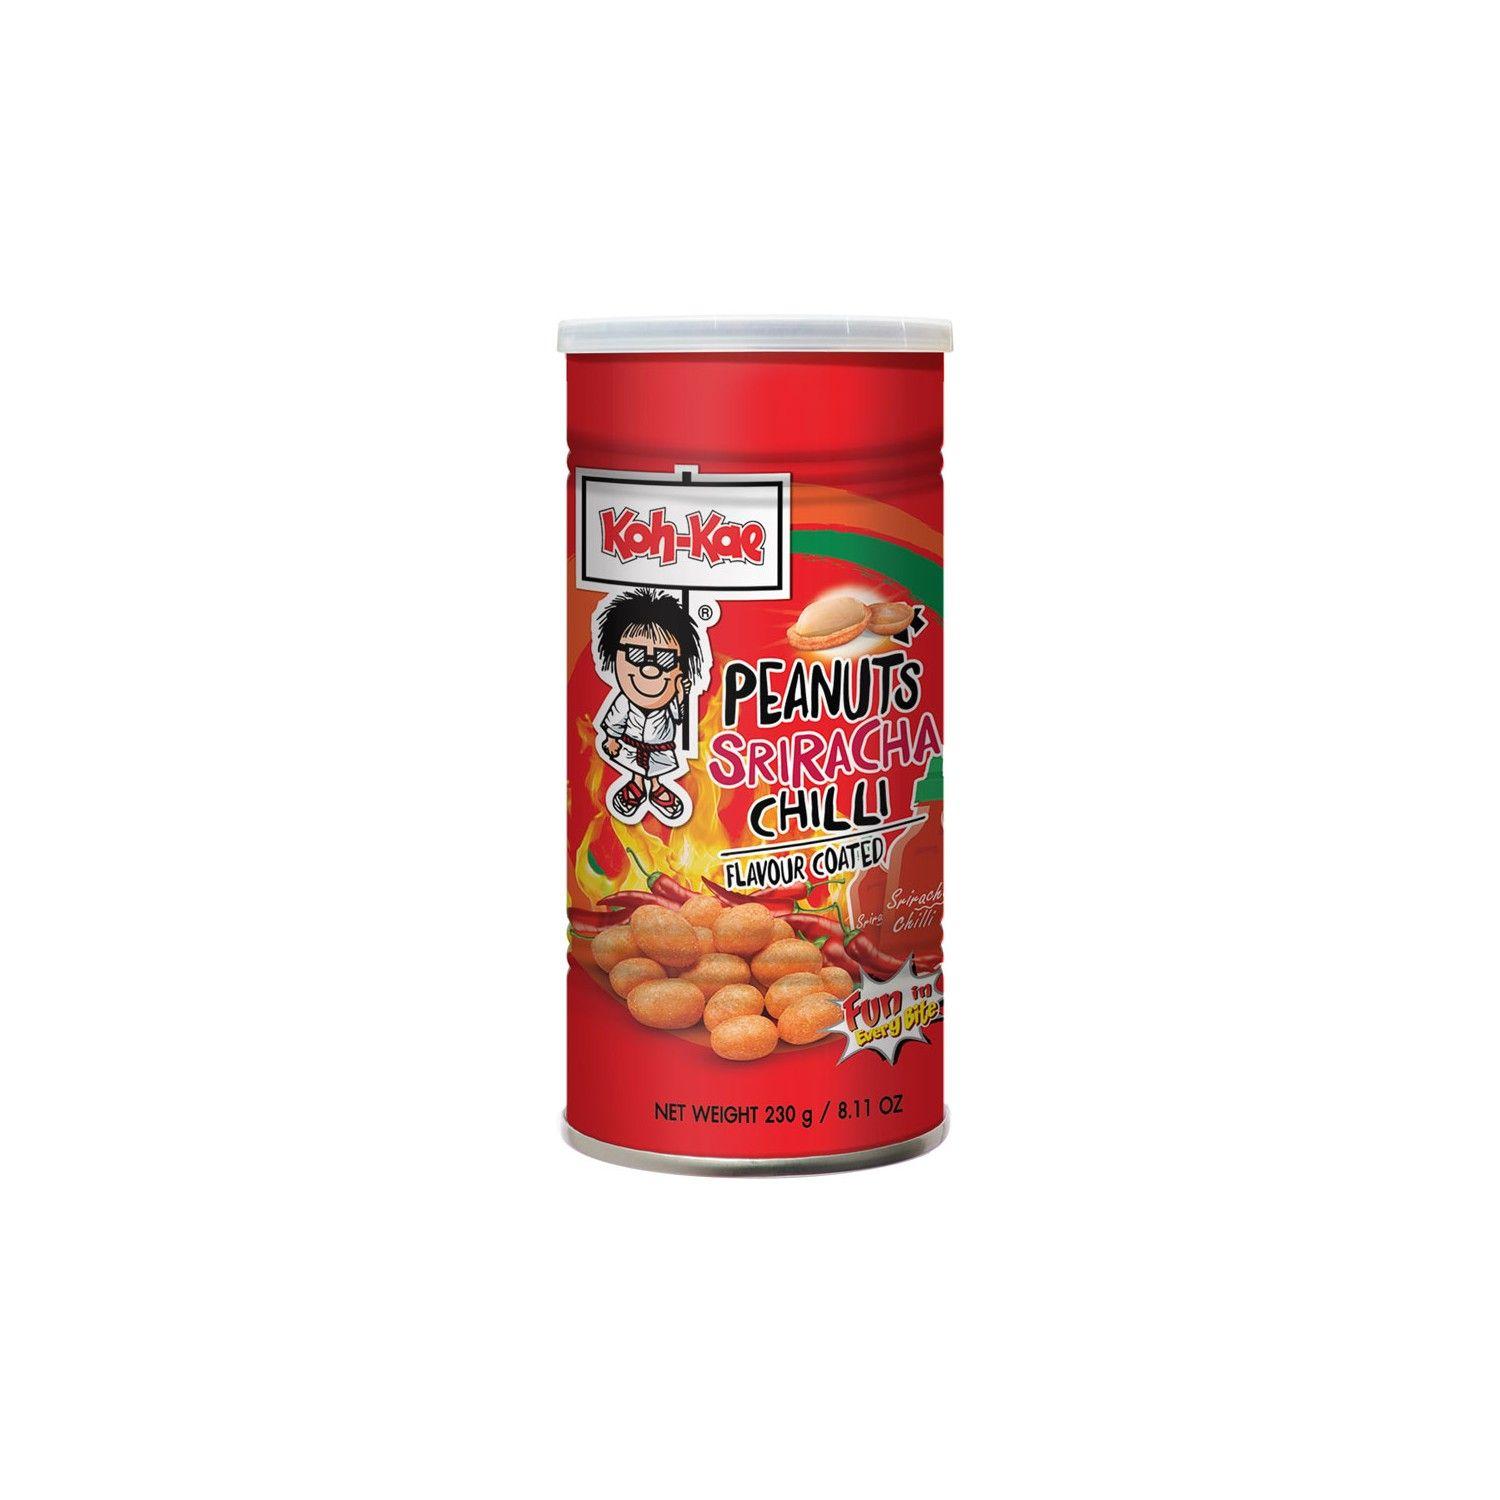 Koh-Kae Logo - Koh-Kae Snacks (大哥 椰漿味花生豆) Peanuts - Coconut Cream Flavour Coated Snack